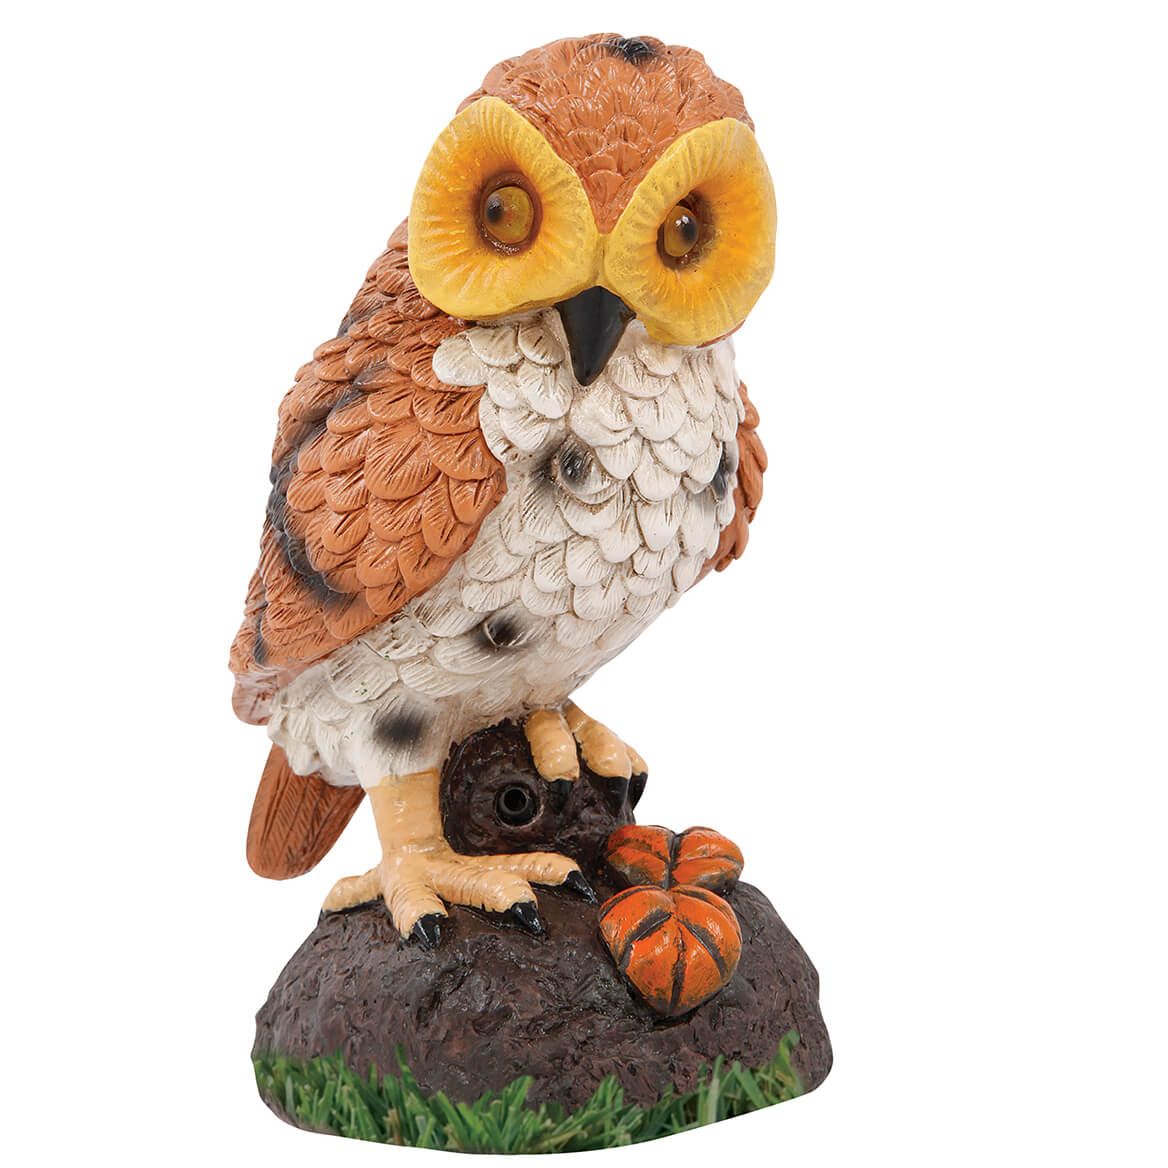 Hooting Garden Owl + '-' + 369702